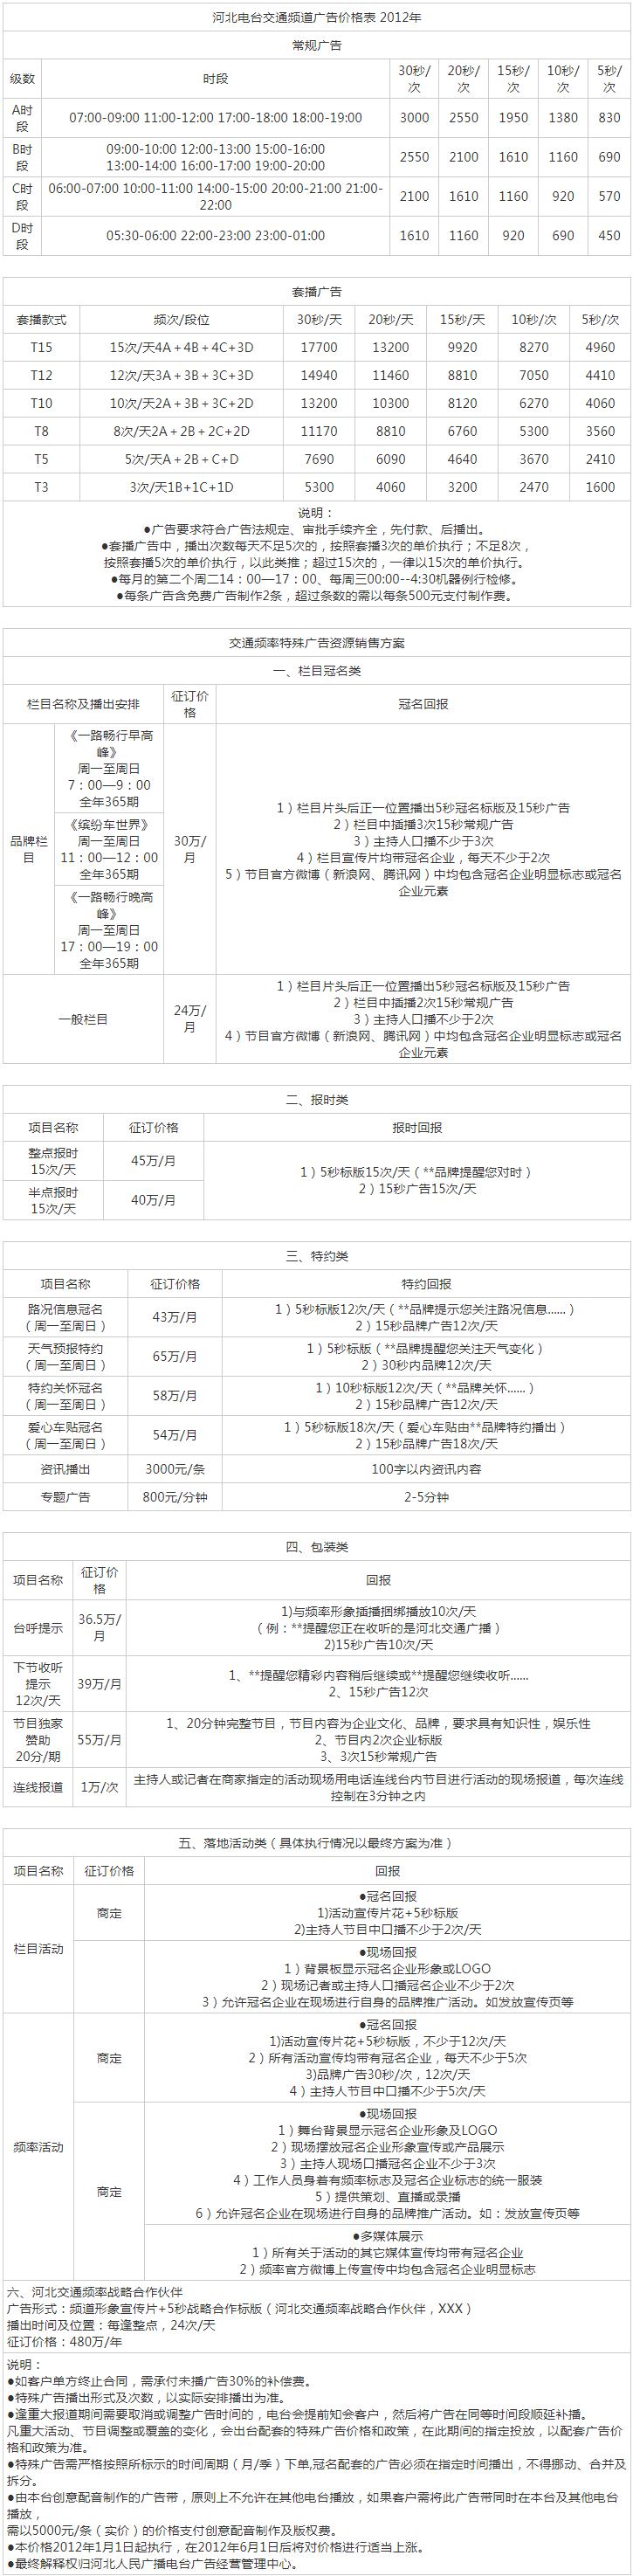 2012河北人民广播电台交通广播FM99.2广告报价表.png